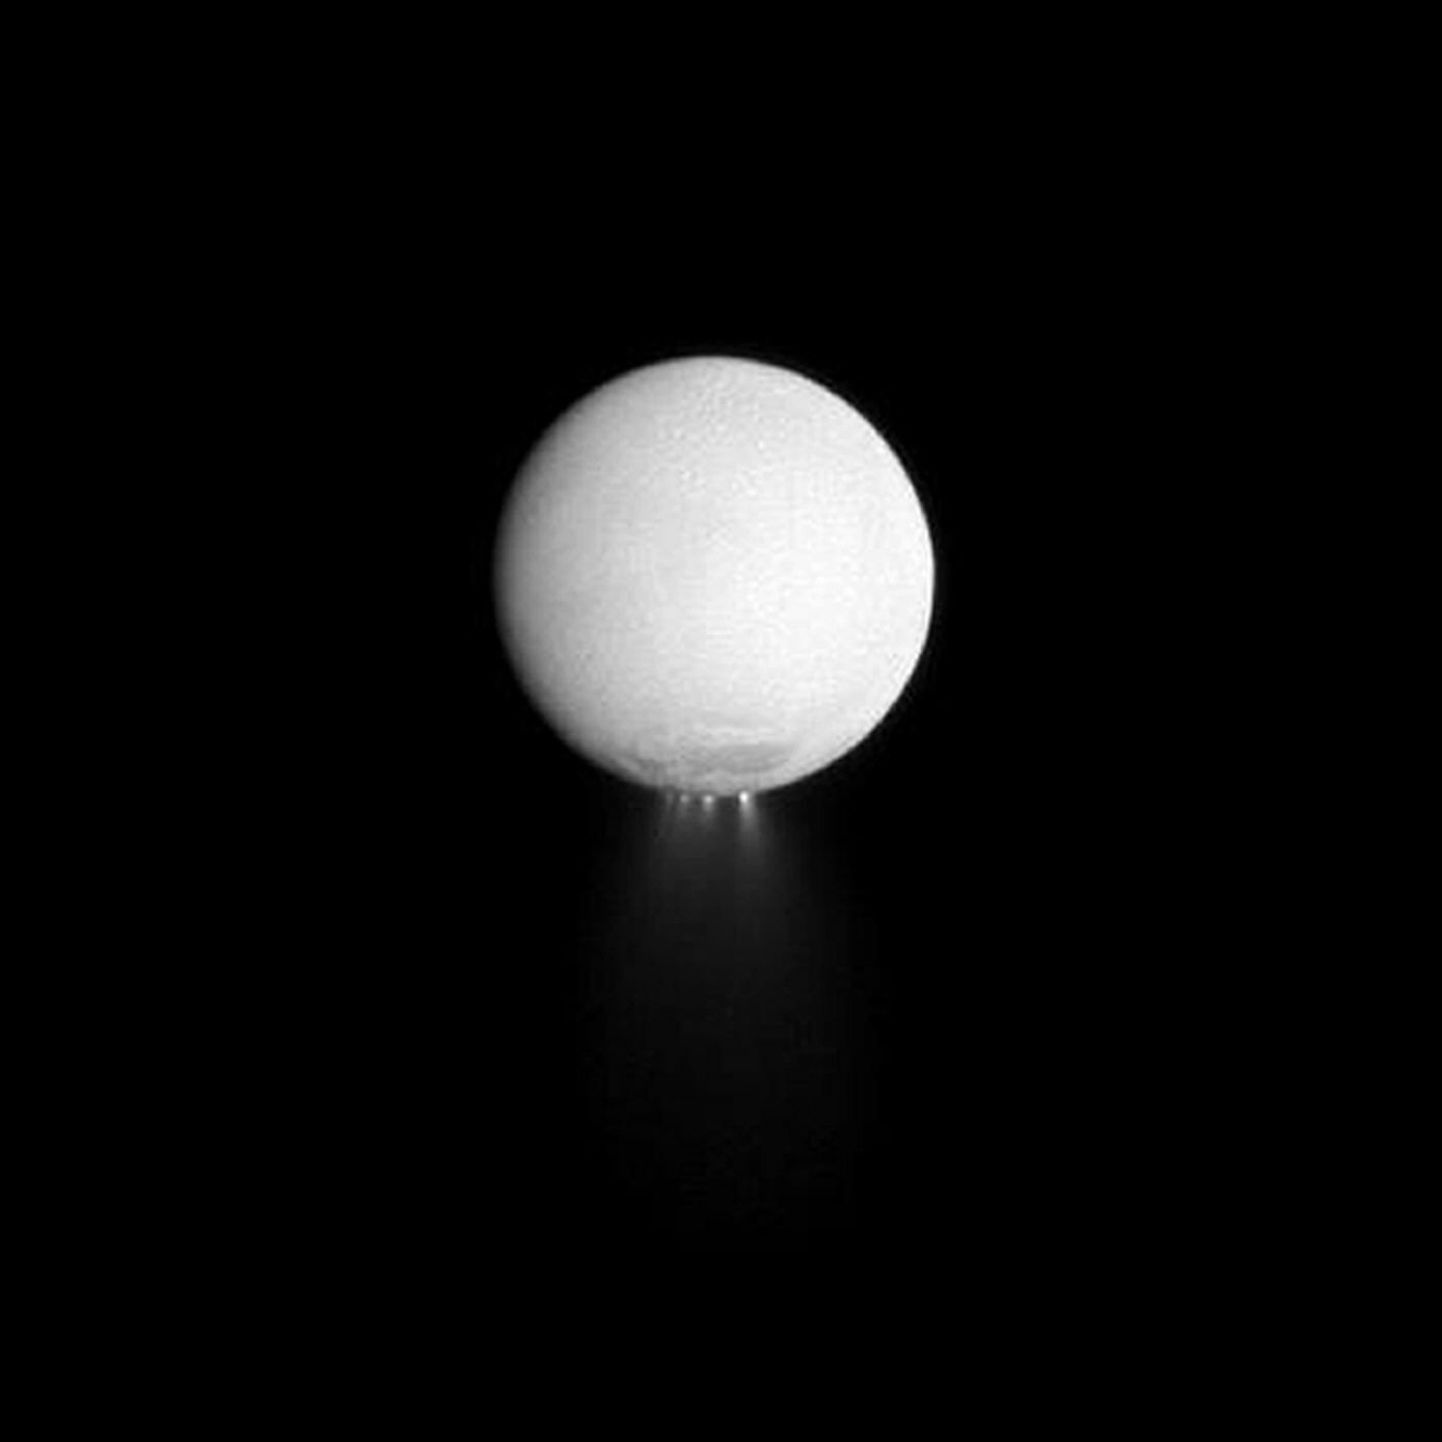 Saturni kuu Enceladus, mille lõunapoolusel on näha veeauru ja jää pilve